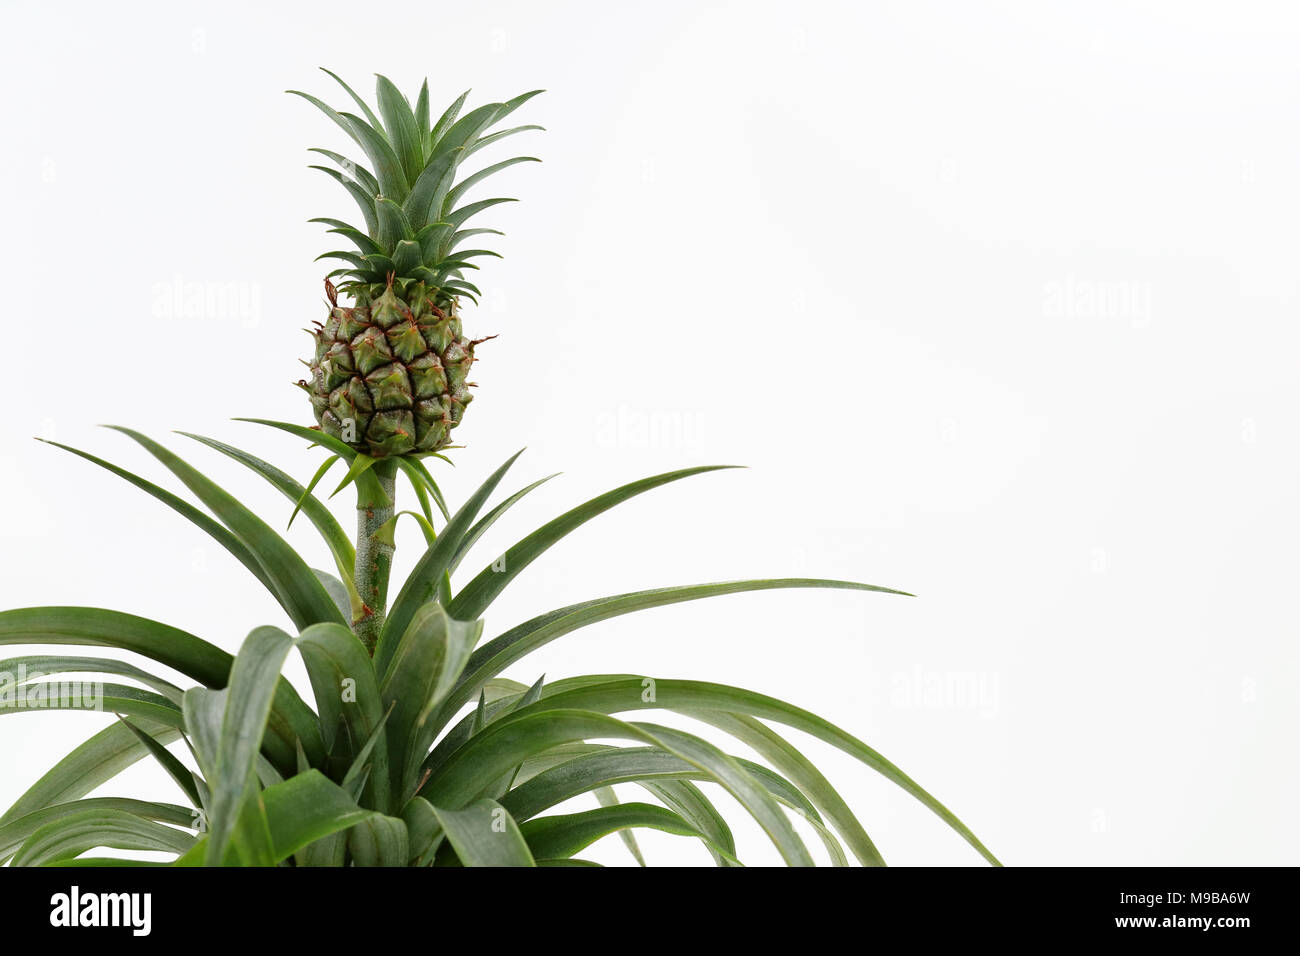 Piccolo bimbo ananas cresce su un impianto isolato su sfondo bianco con spazio di copia Foto Stock